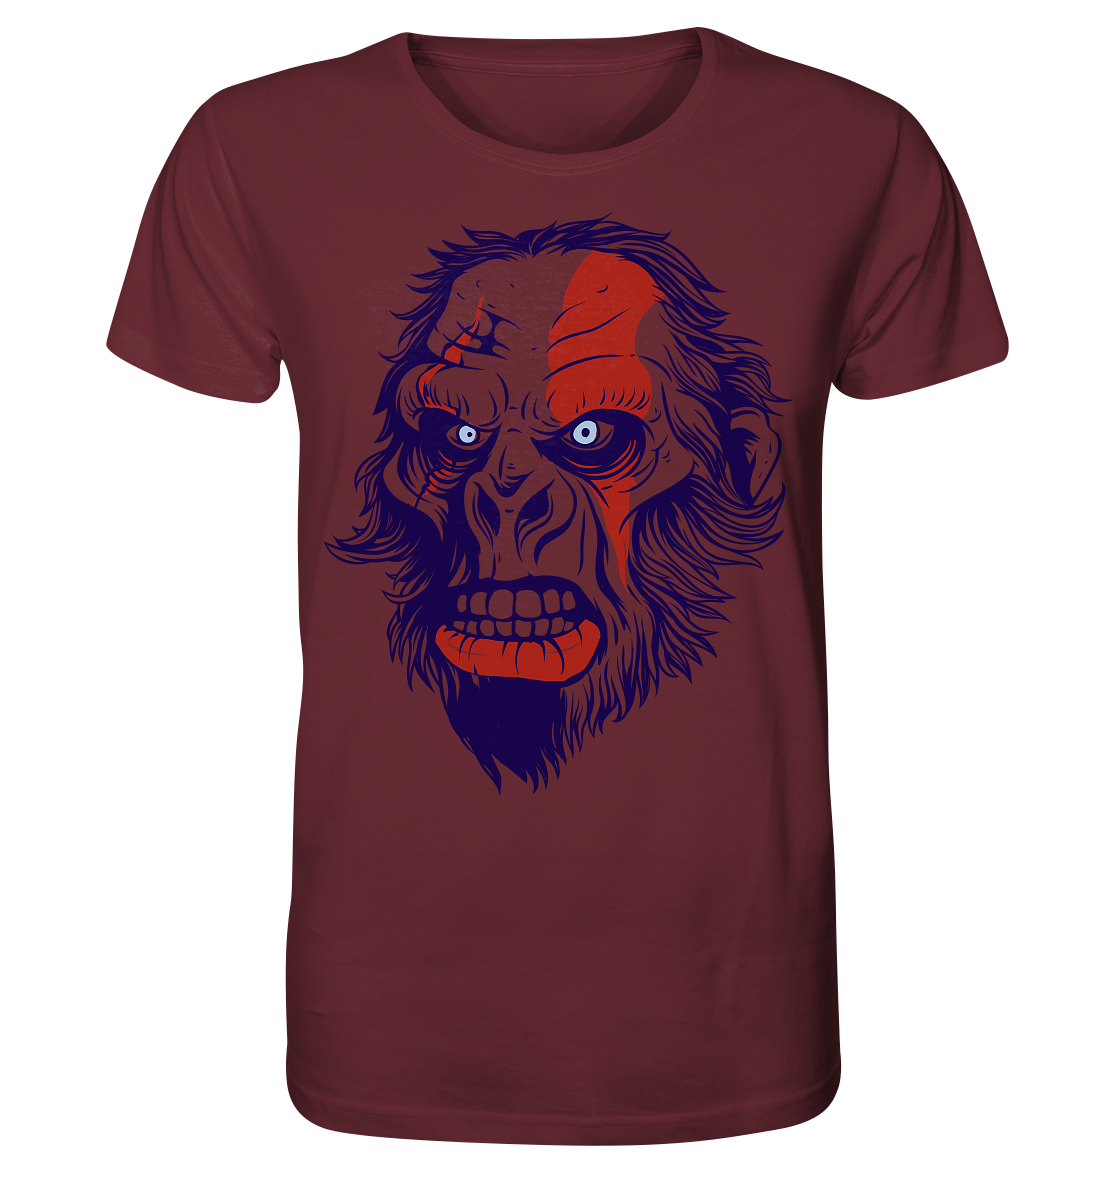 Angry Ape - Organic Shirt